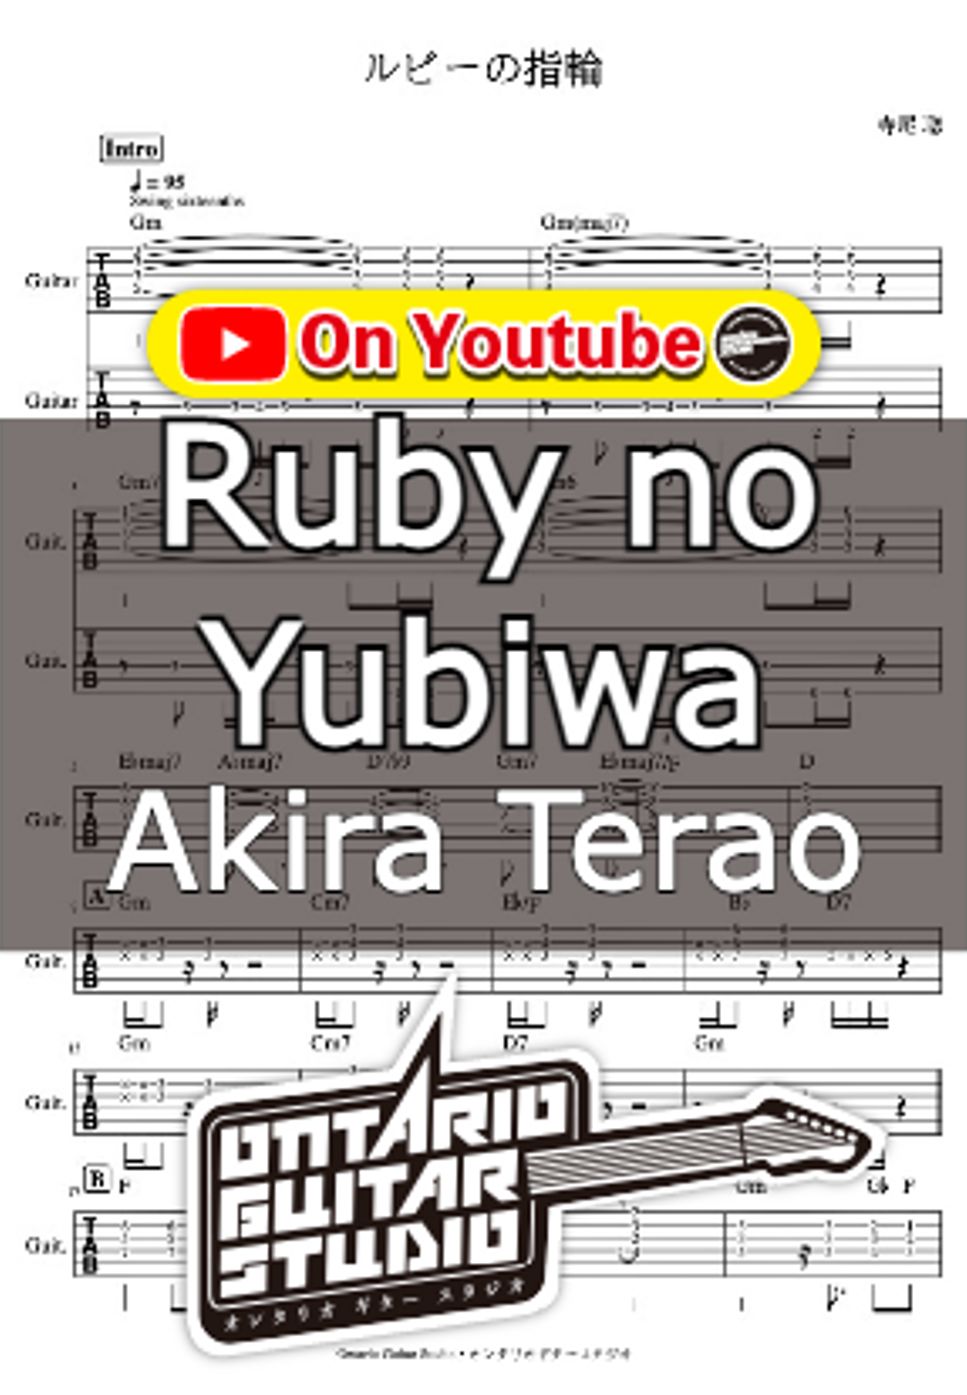 Akira Terao - Ruby no Yubiwa by Ontario Guitar Studio